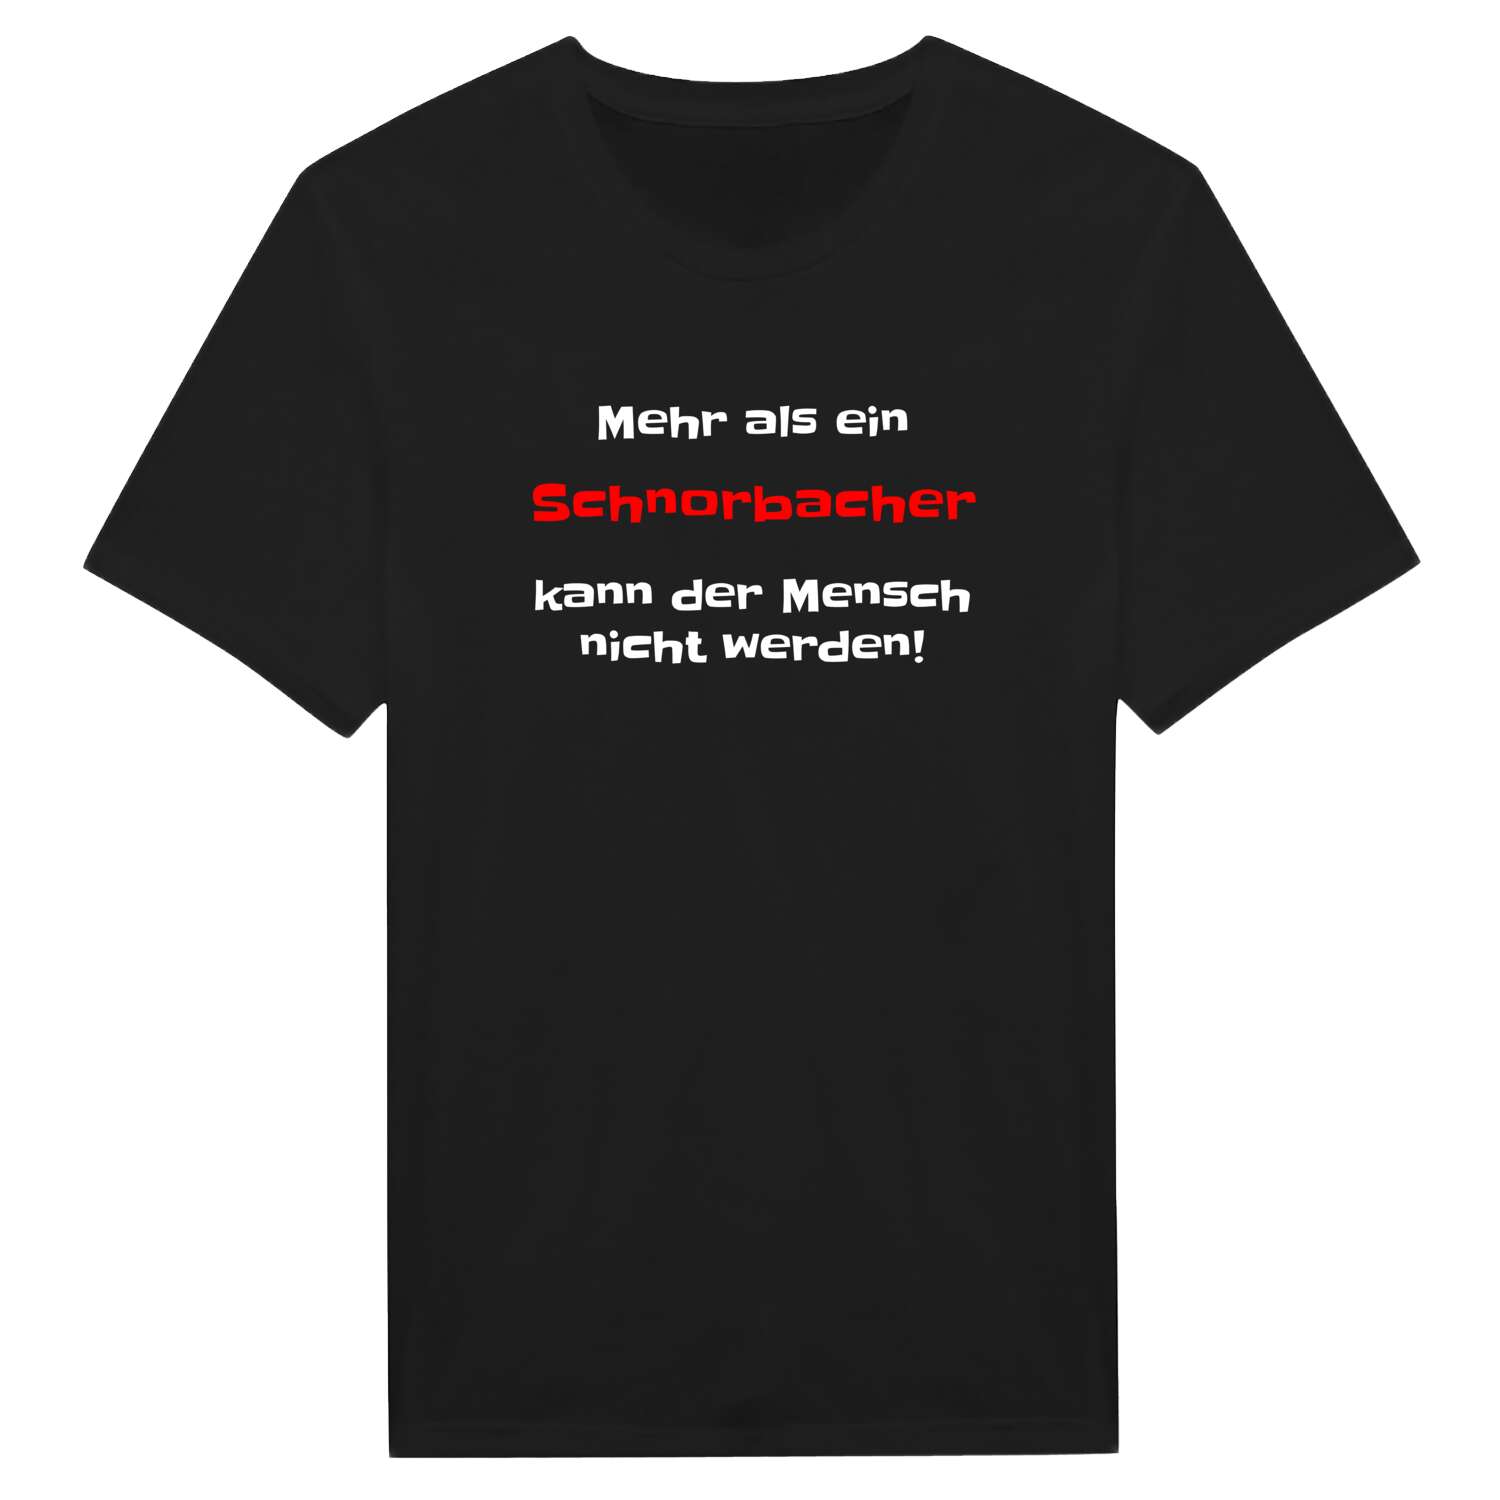 Schnorbach T-Shirt »Mehr als ein«